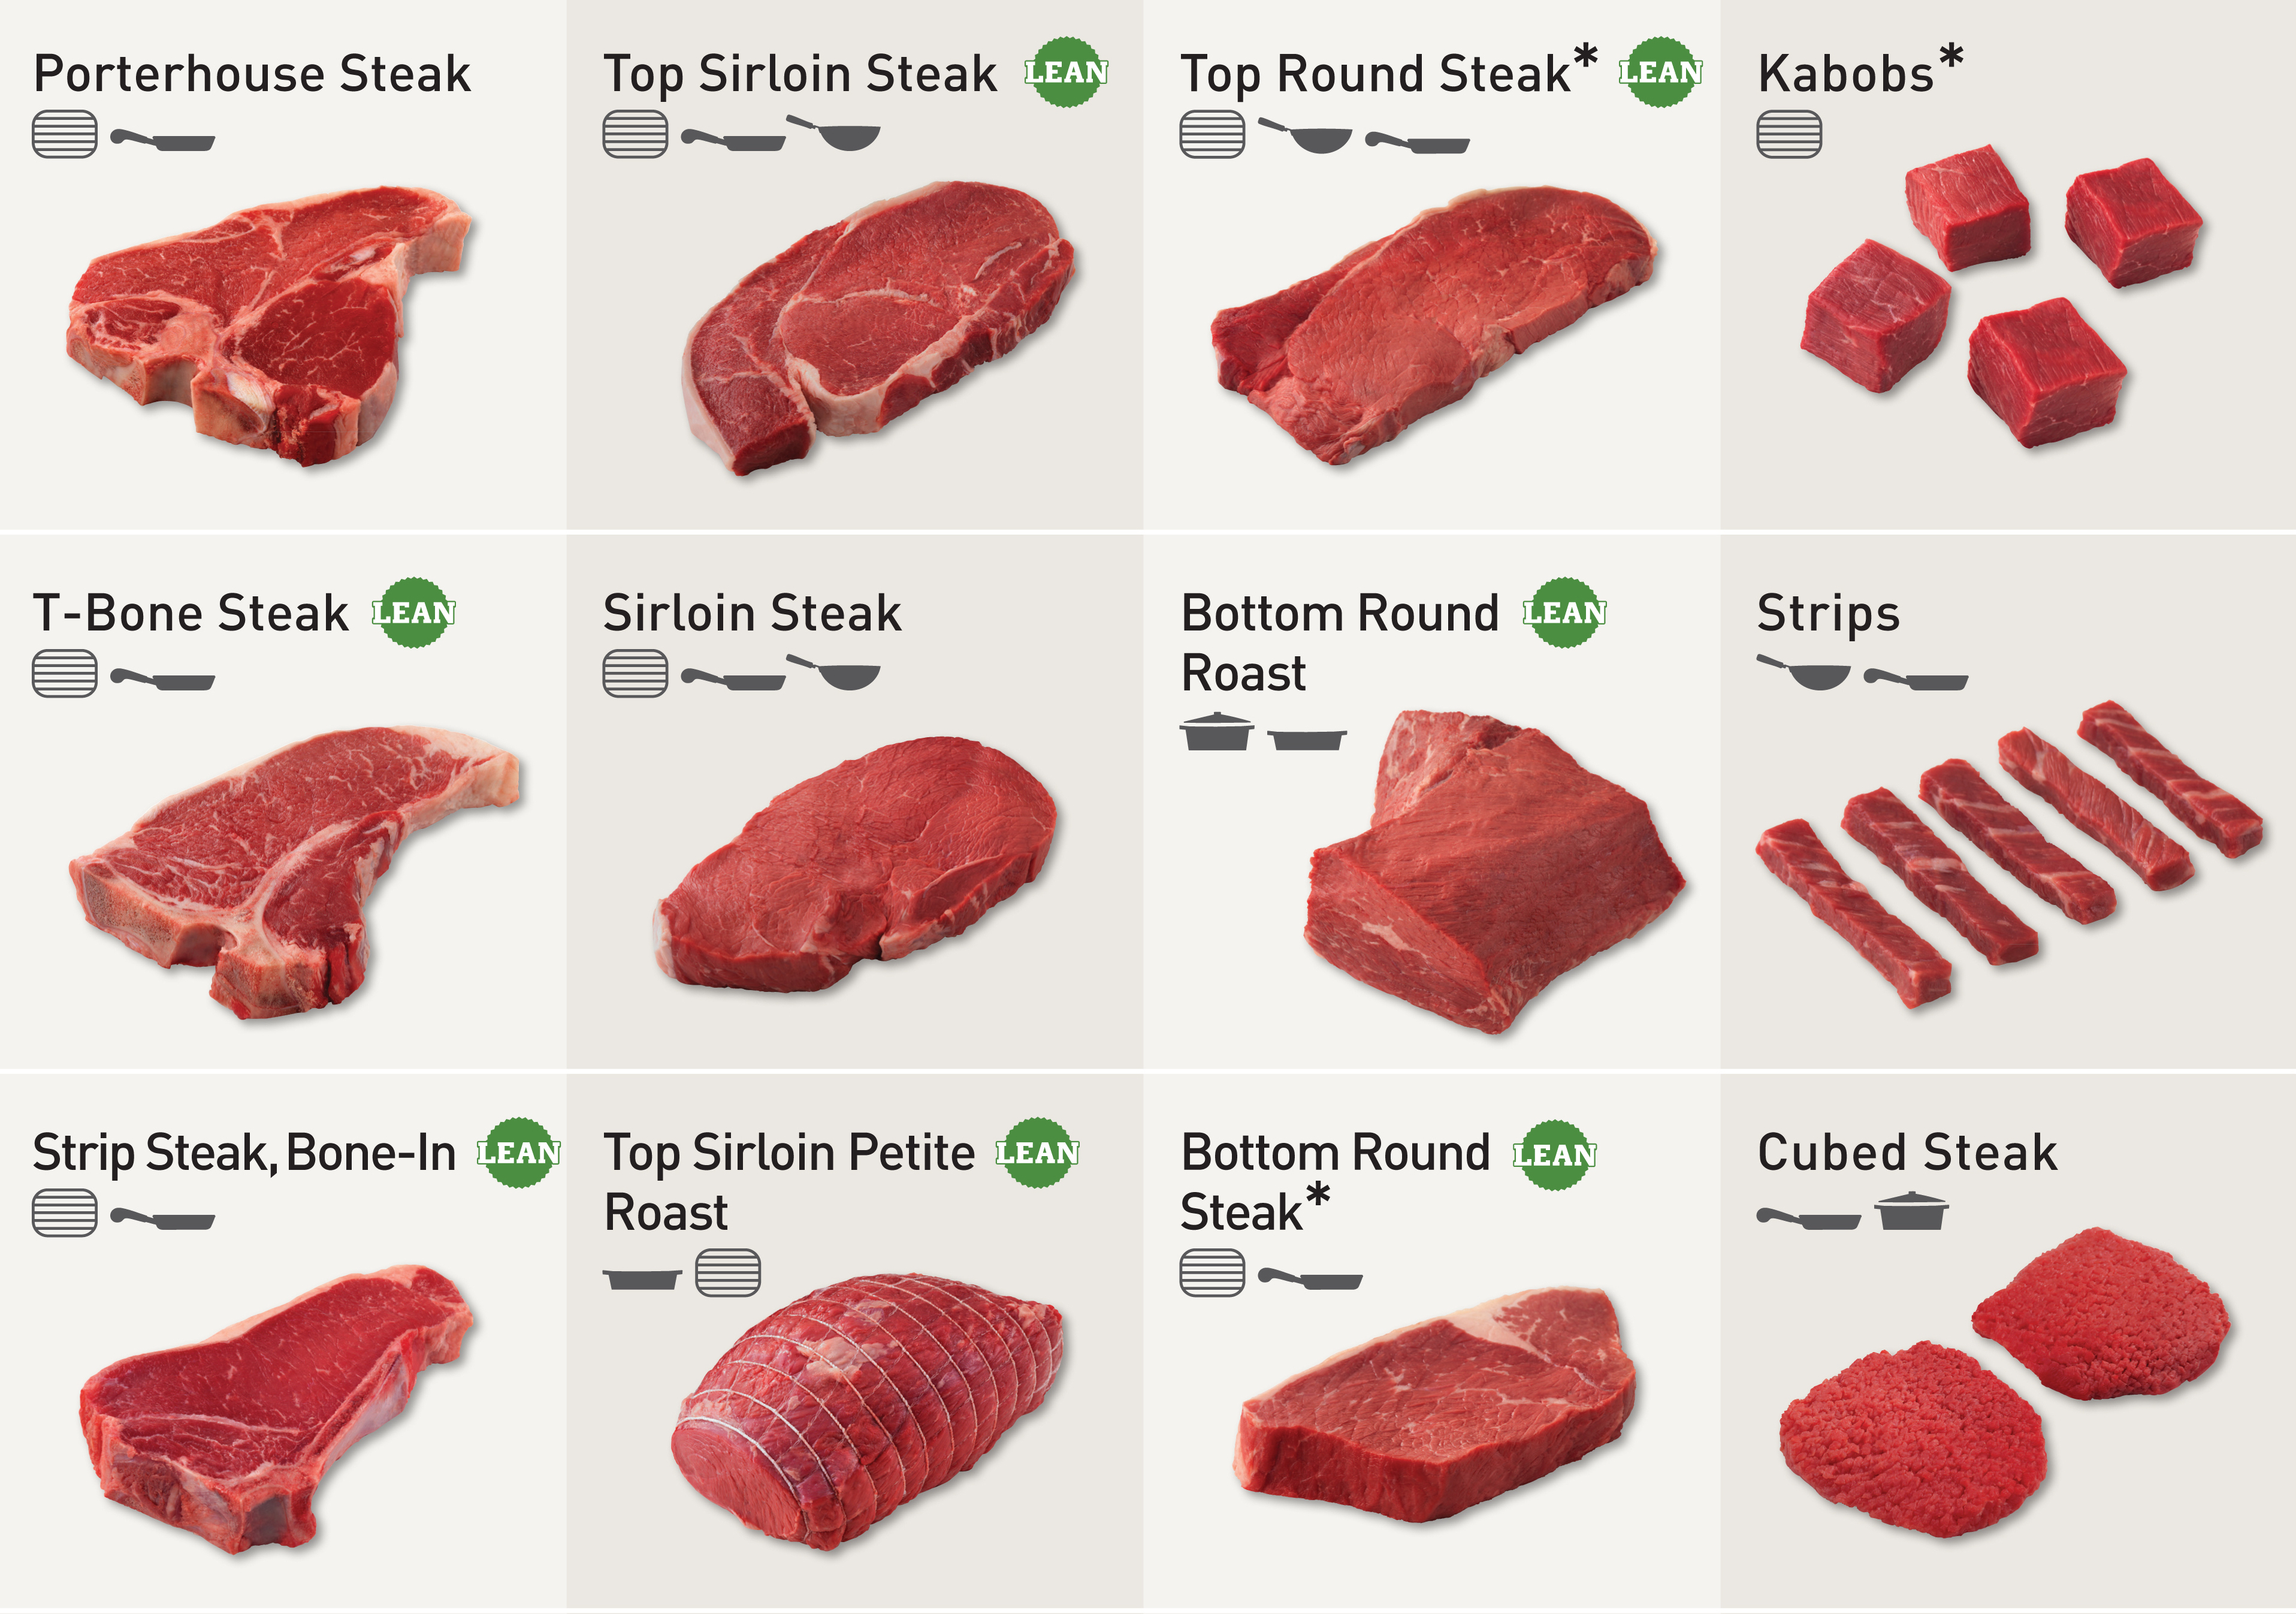 beef-cuts.jpg